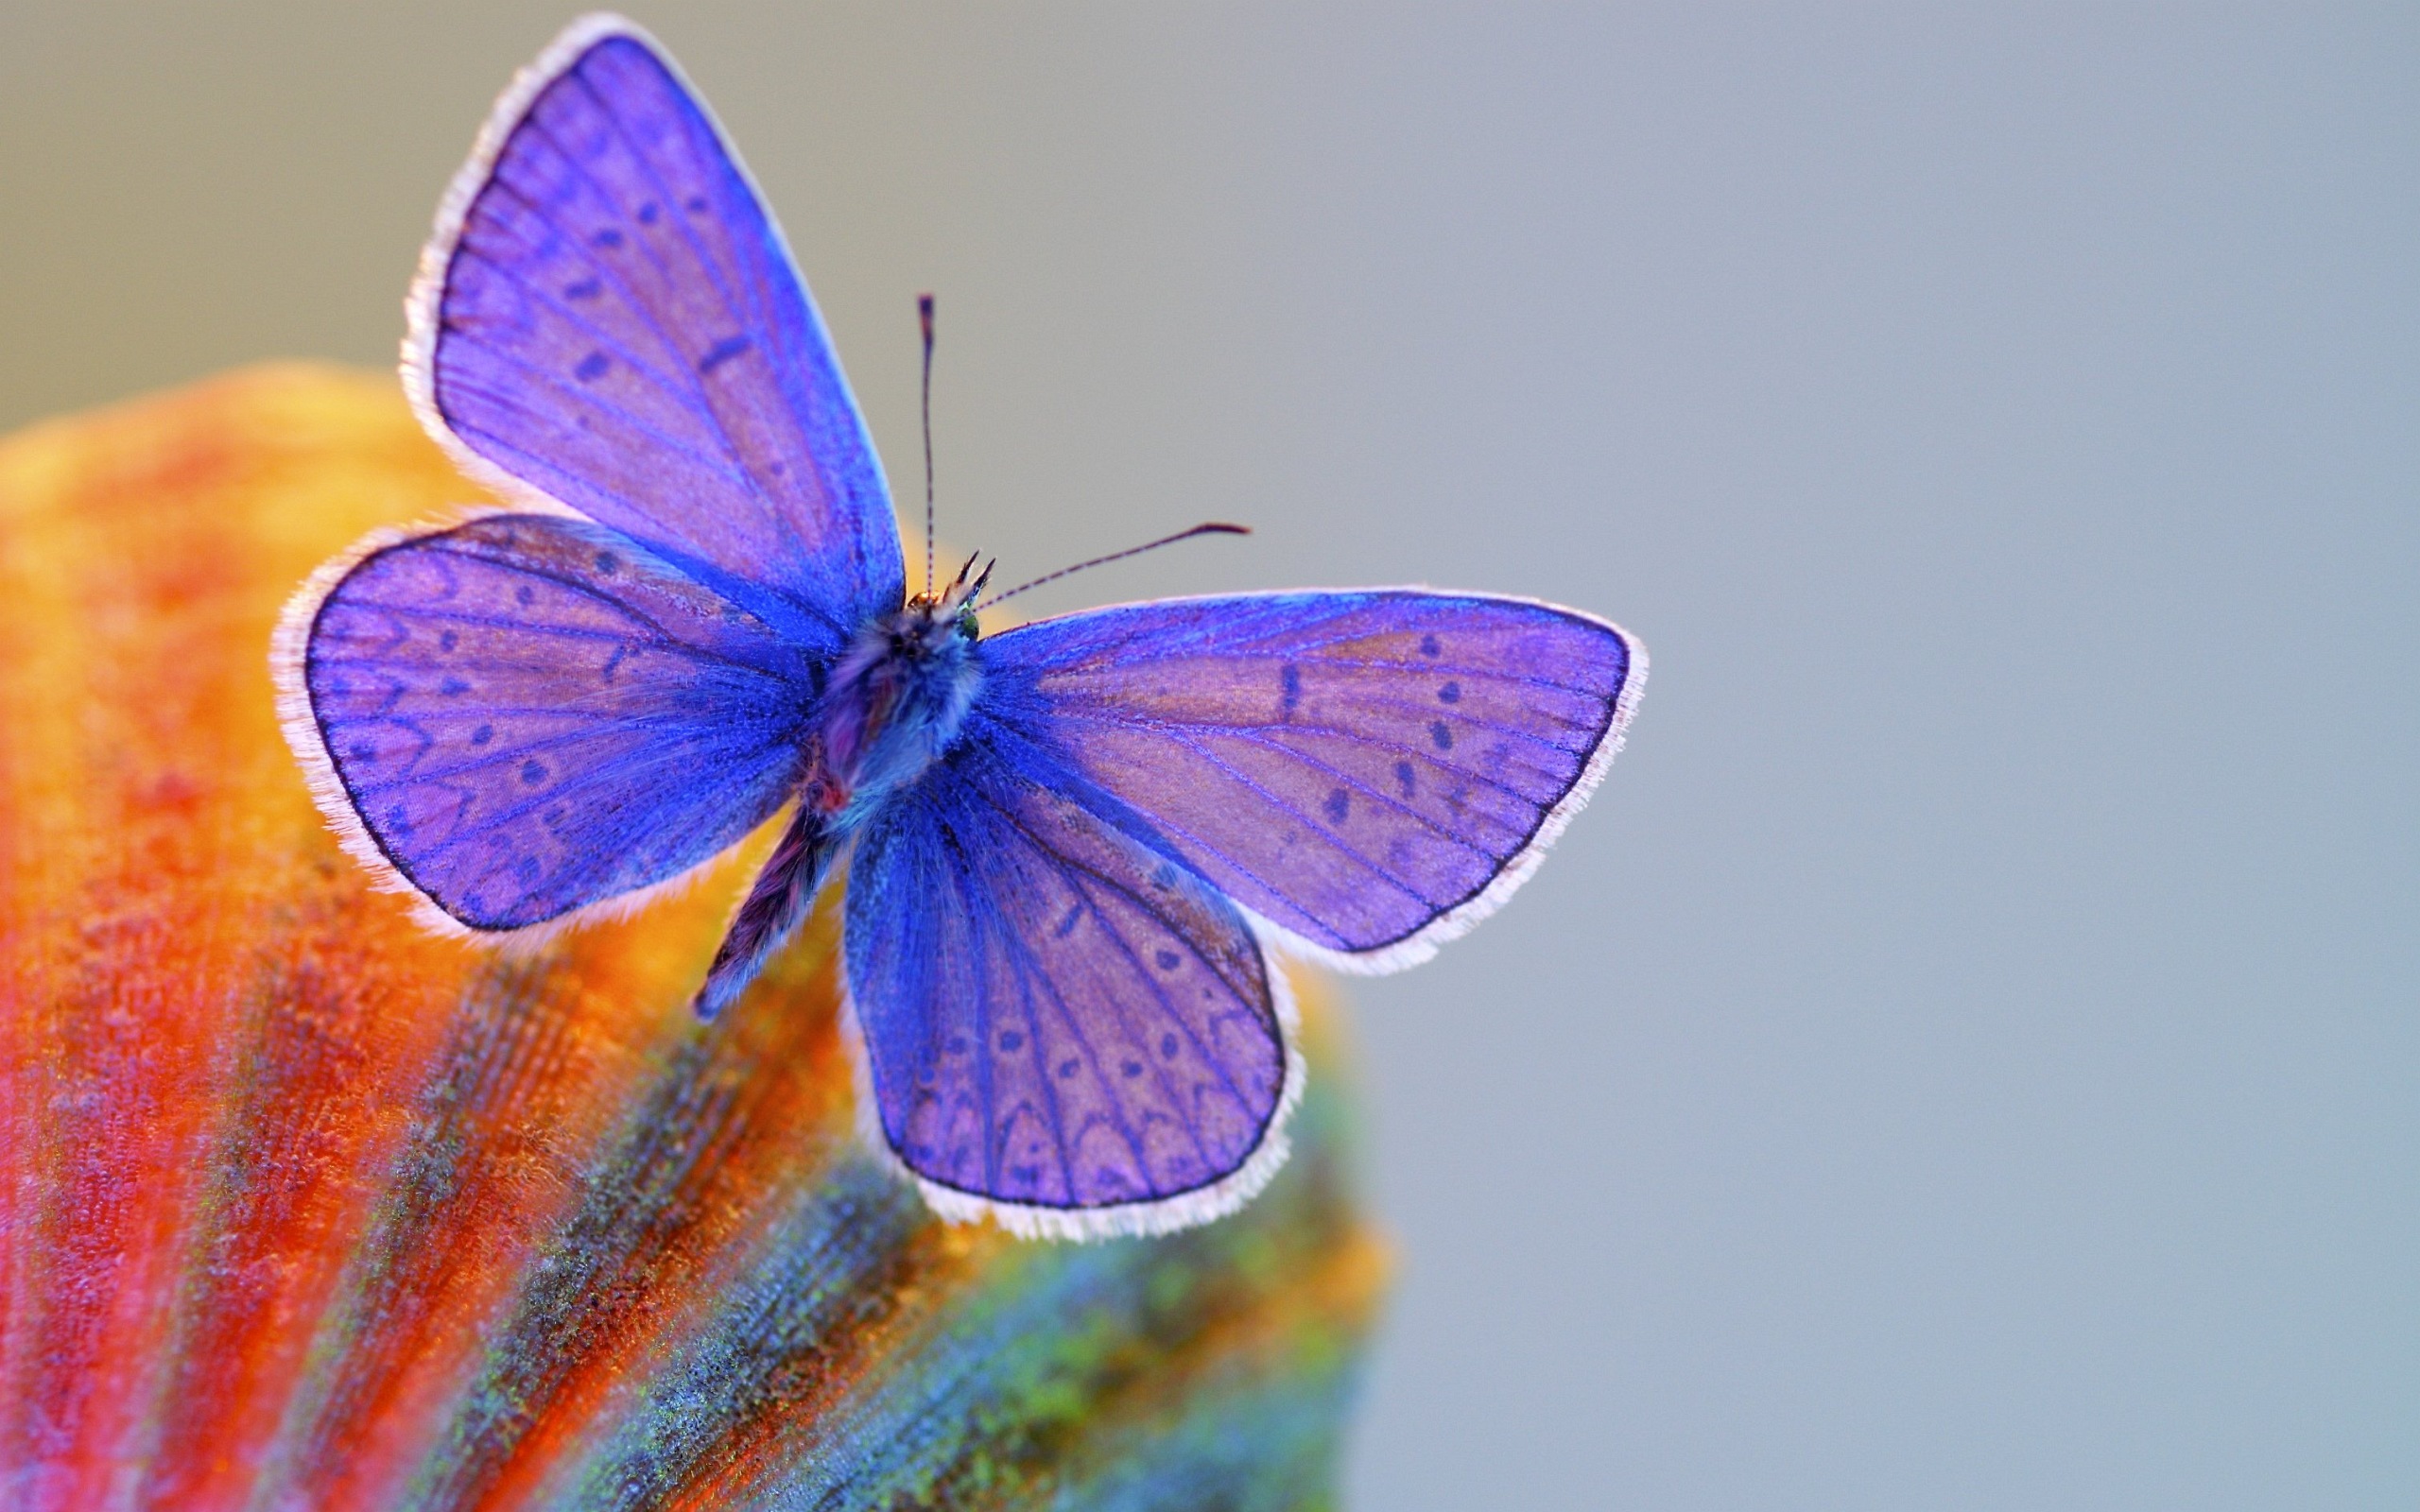 cute butterfly wallpaper desktop - HD Desktop Wallpapers ...